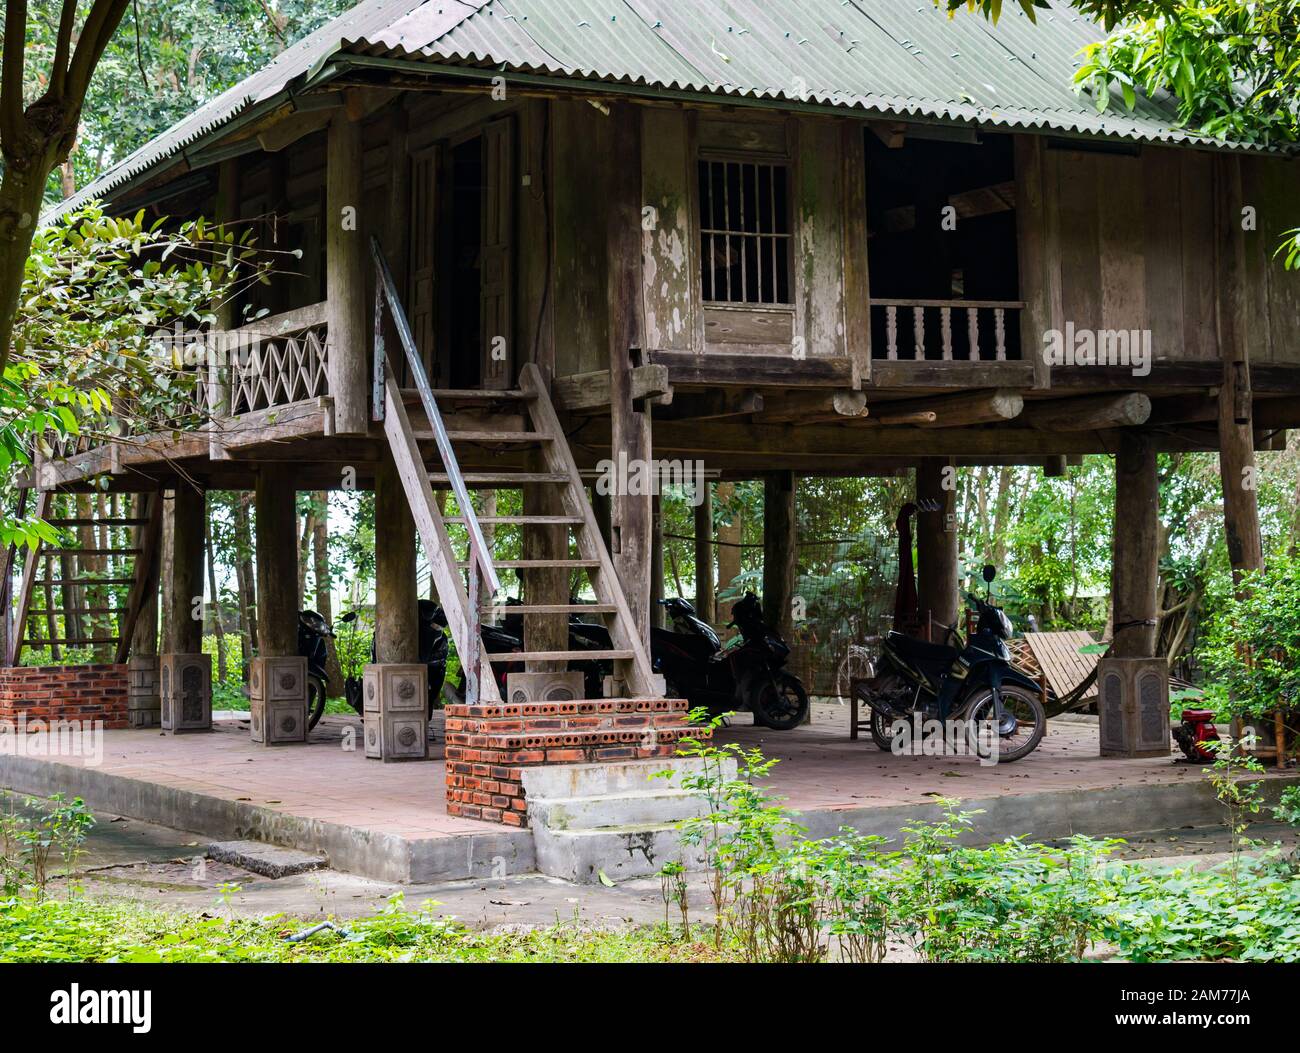 Ancienne maison traditionnelle en bois sur pilotis avec des motos garées en dessous, Dong Tham, Ninh Binh, Vietnam, Asie Banque D'Images